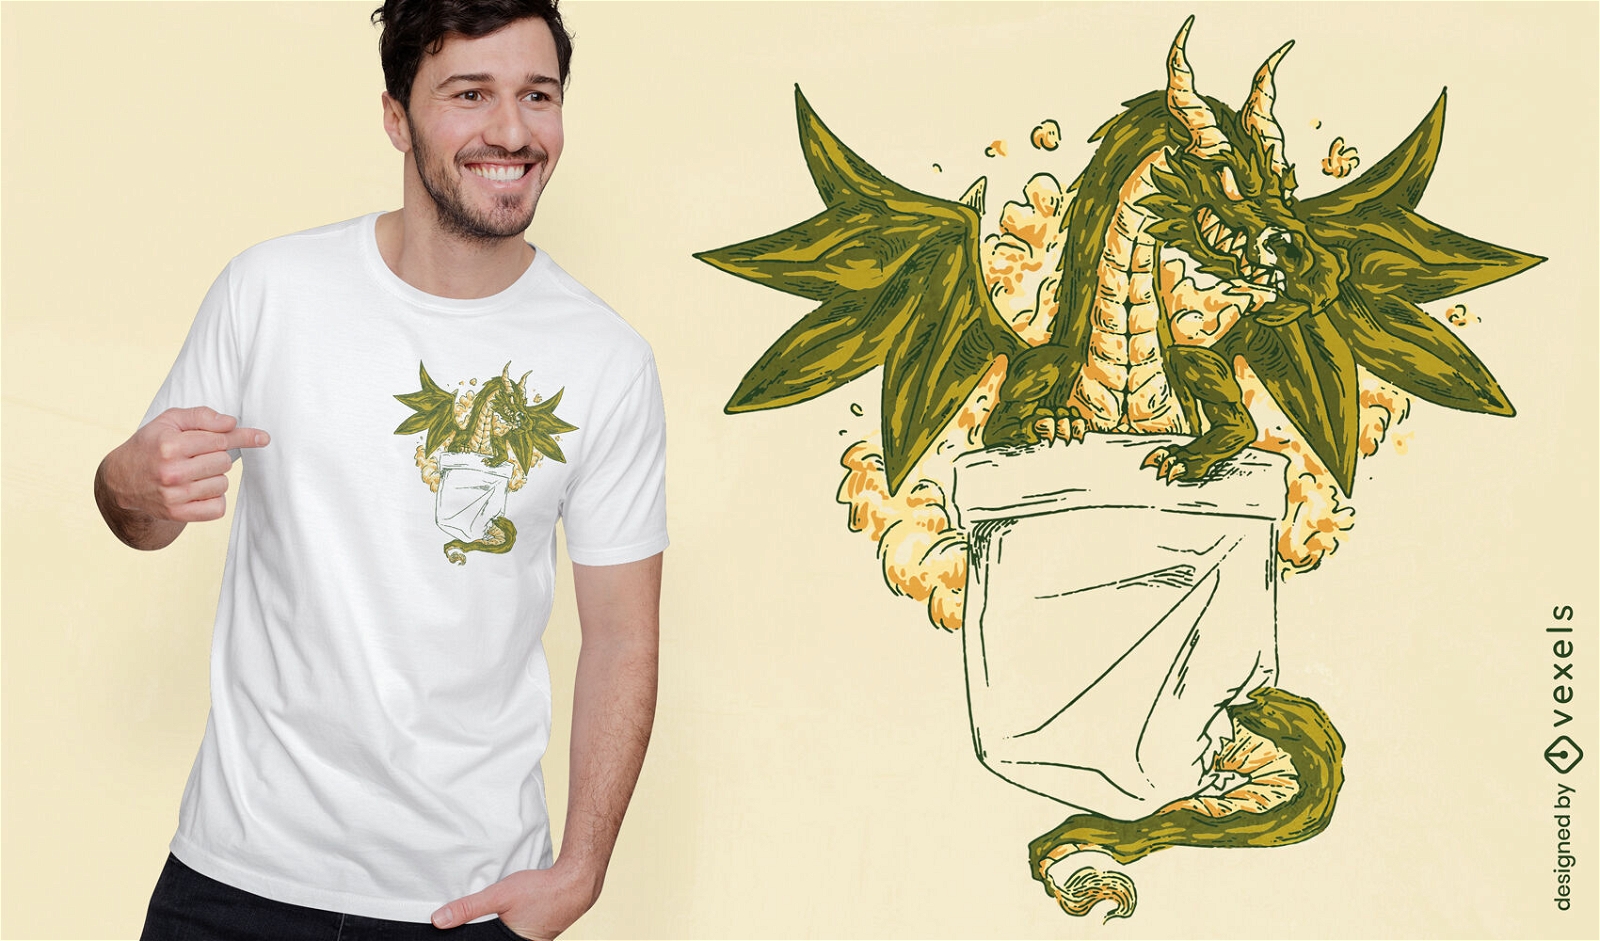 Criatura dragón en diseño de camiseta de bolsillo.